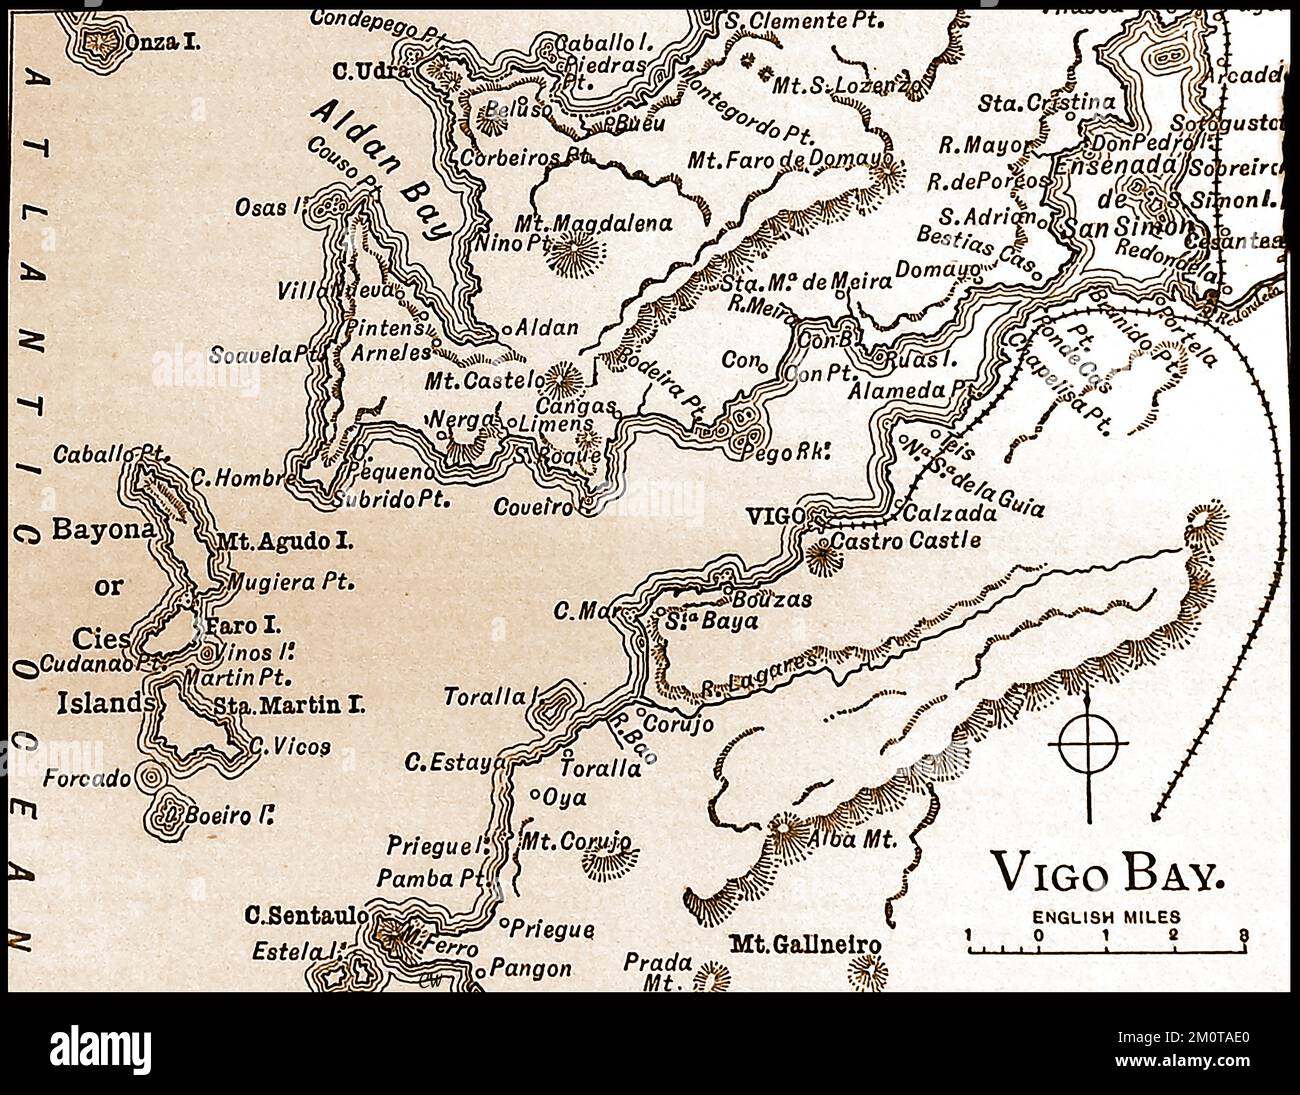 A 19th century map of the Vigo Bay area scene of   The Battle of Vigo Bay, also known as the Battle of Rande,  de la escena del área de la Bahía de Vigo de La Batalla de la Bahía de Vigo, también conocida como la Batalla de Rande y la Batalla de Rande), una batalla naval librada el 23 de octubre de 1702. -   Une carte du 19ème siècle de la scène de la région de la baie de Vigo de la bataille de la baie de Vigo,  --  Een 19e-eeuwse kaart van de Vigo Bay gebied scène van de Slag om Vigo Bay, Stock Photo